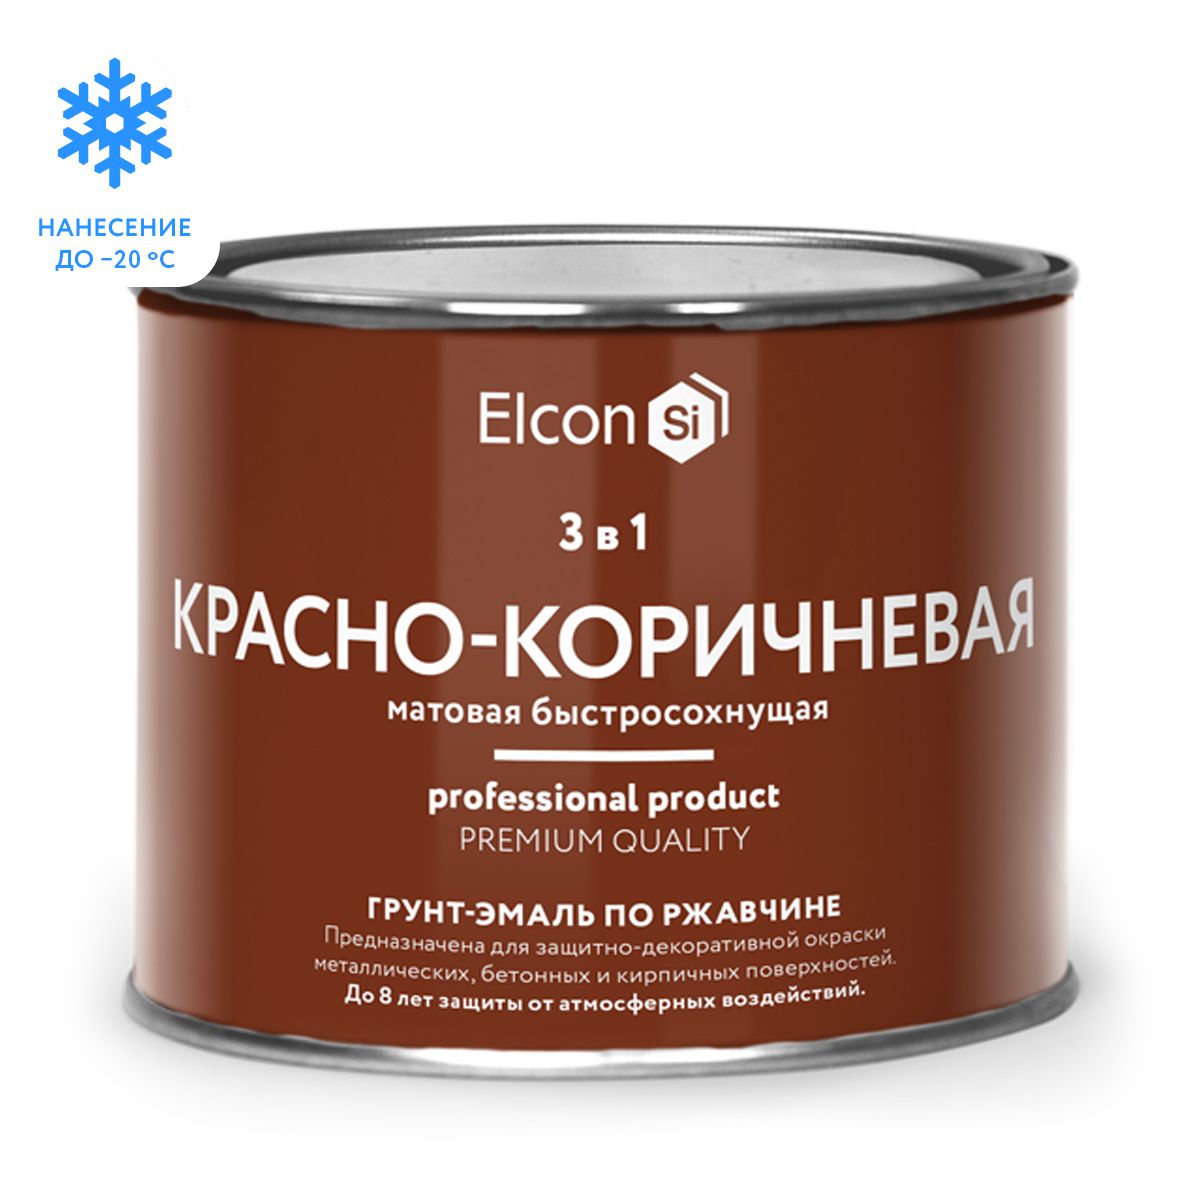 Elcon Быстросохнущая грунт-эмаль 3 в 1 по ржавчине/ краска по металлу красно-коричневая 0,